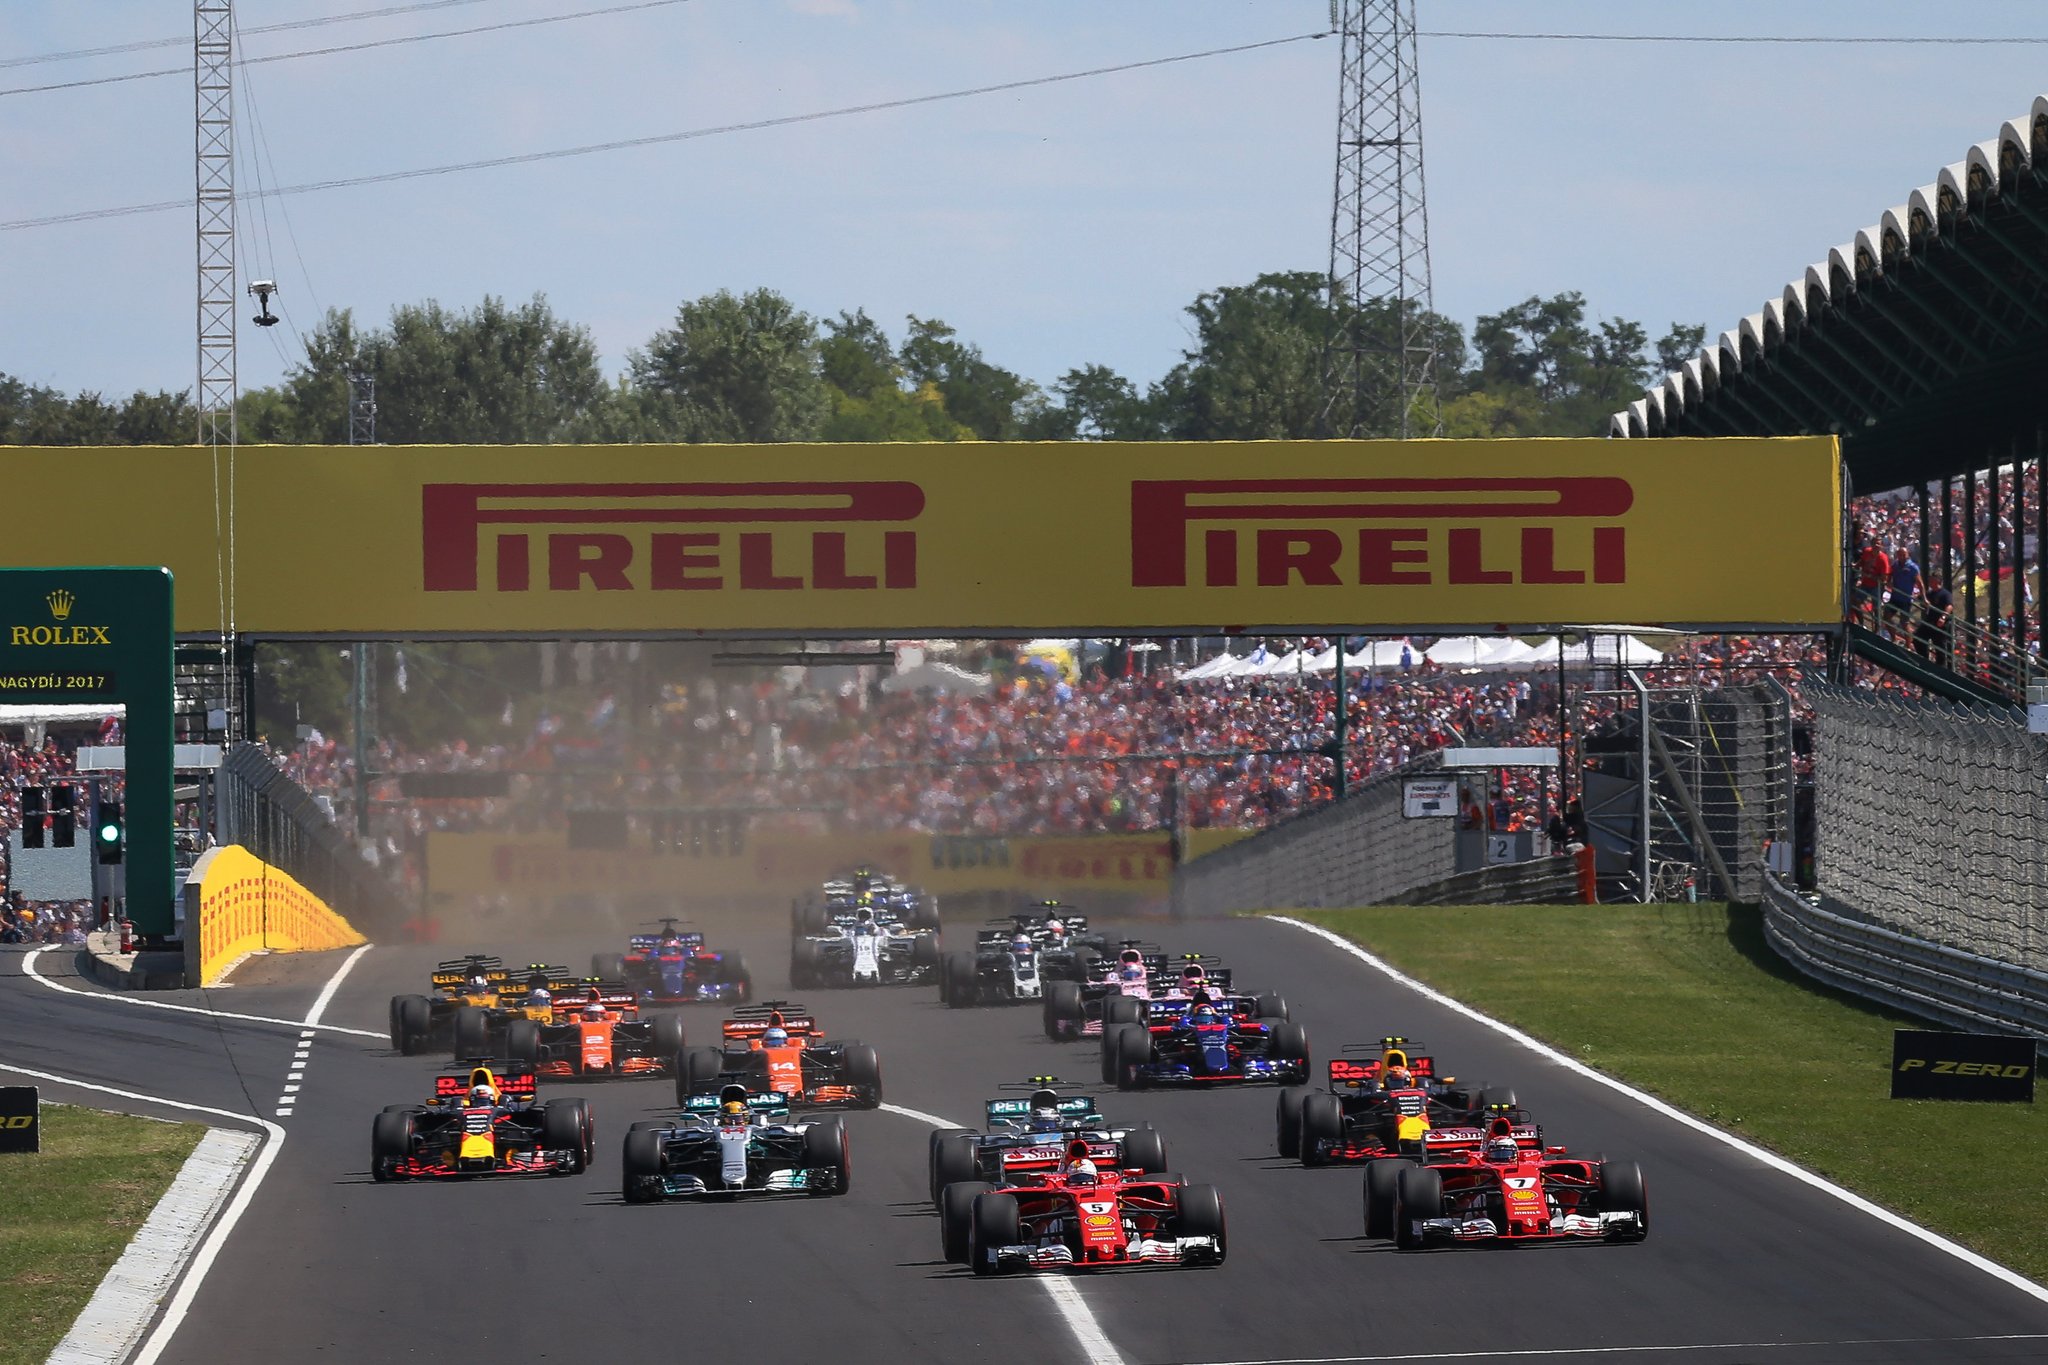 2018 Hungarian Grand Prix.jpg